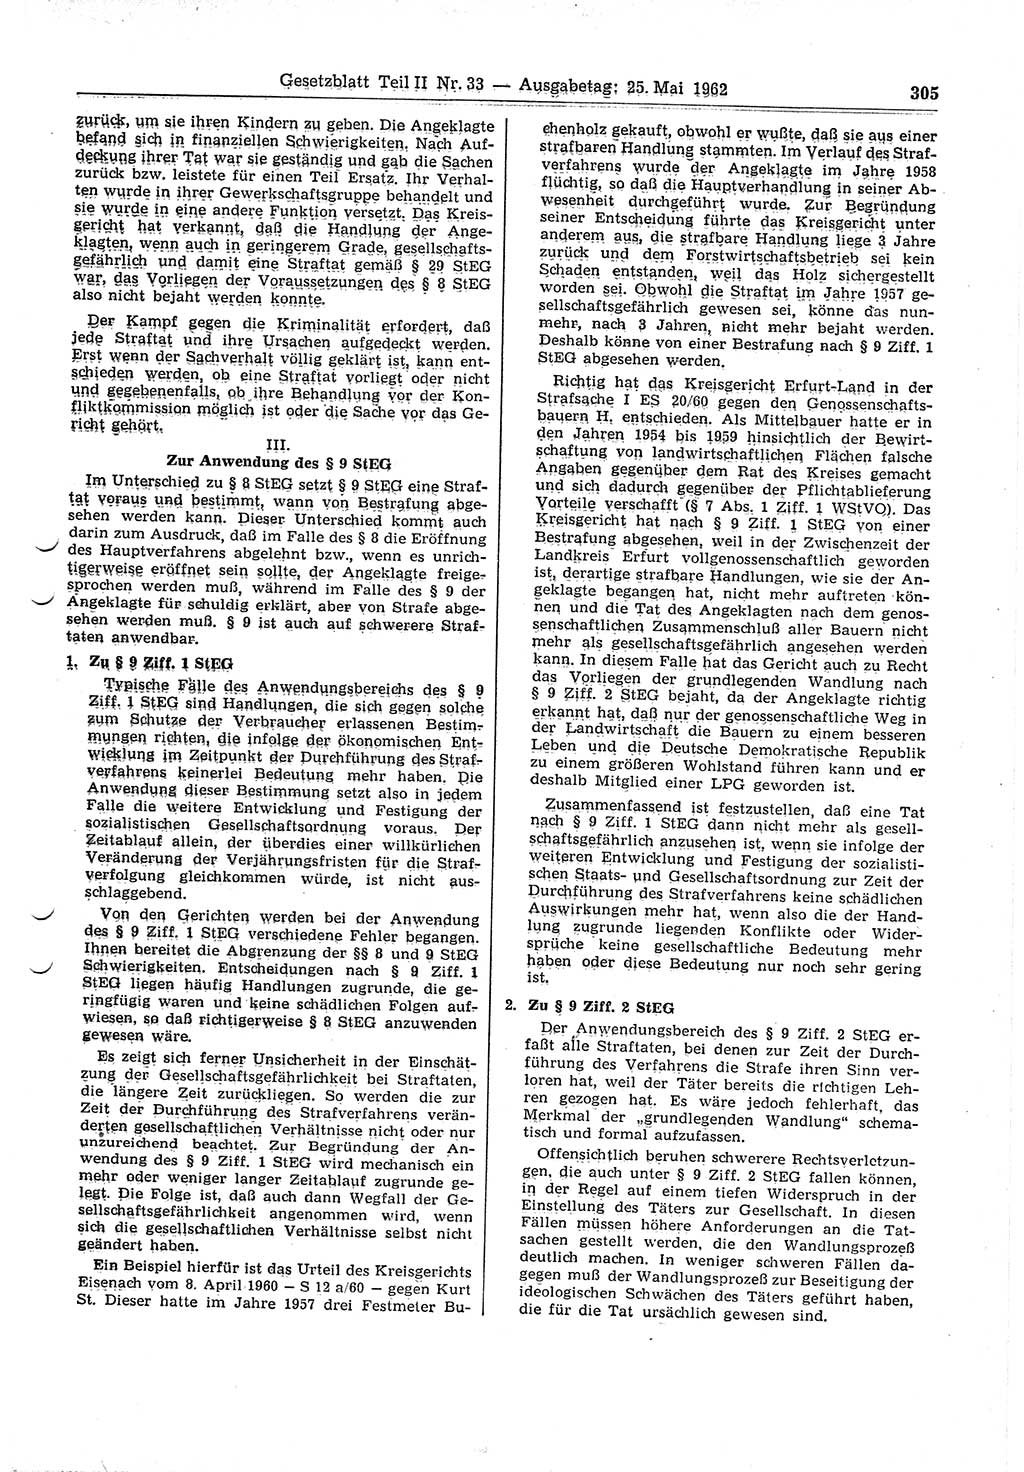 Gesetzblatt (GBl.) der Deutschen Demokratischen Republik (DDR) Teil ⅠⅠ 1962, Seite 305 (GBl. DDR ⅠⅠ 1962, S. 305)